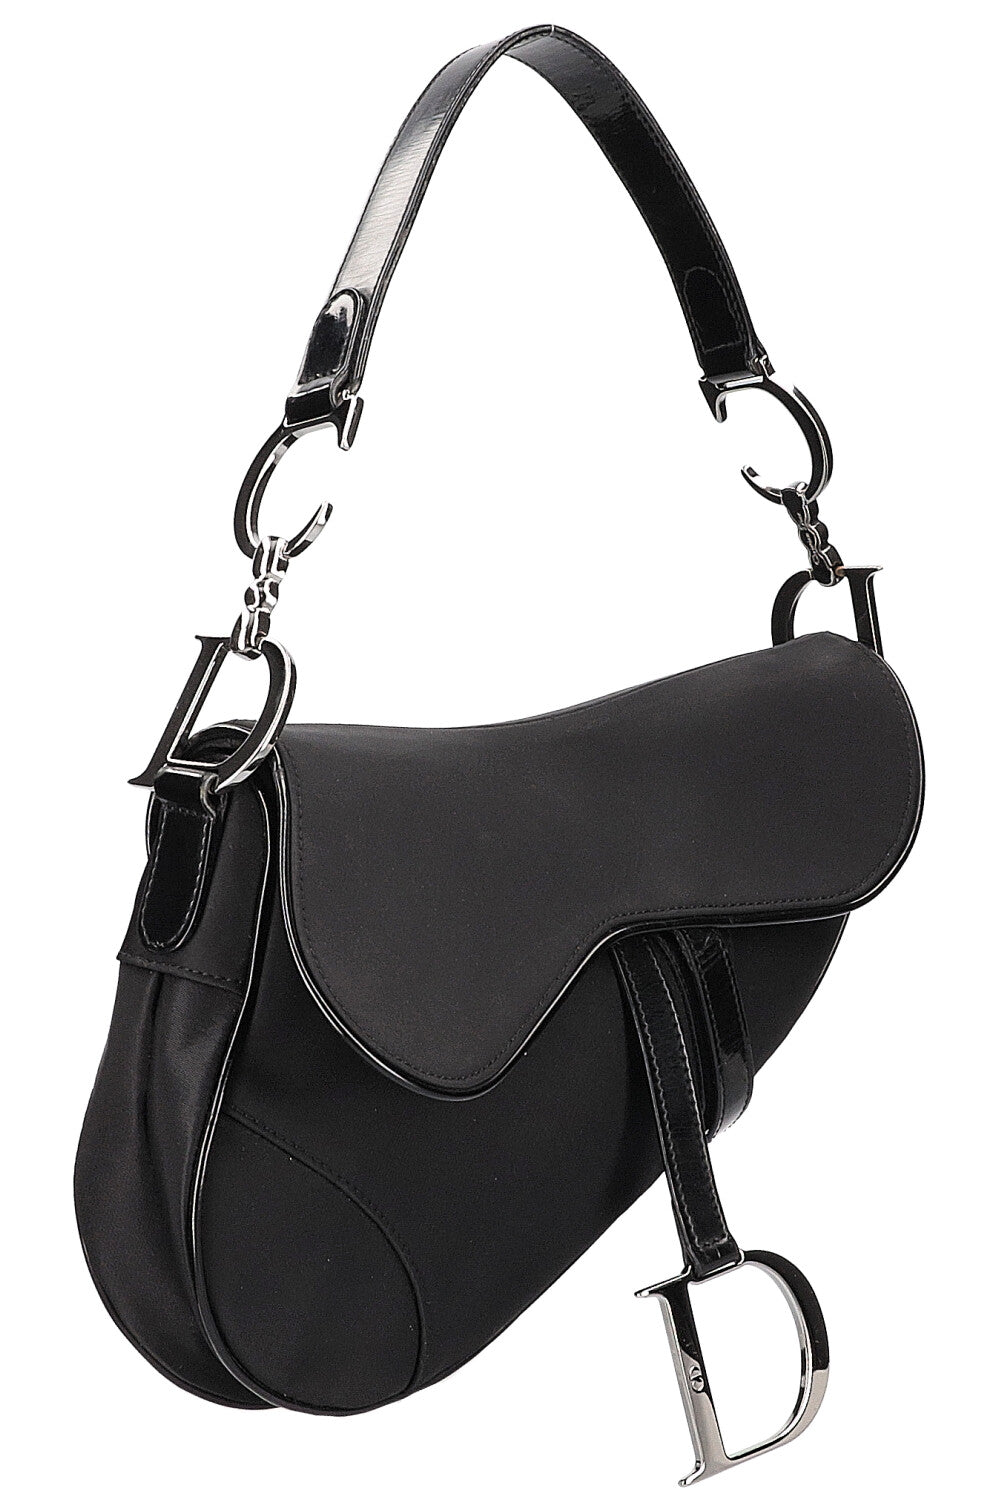 Dior vintage saddle bag review  YouTube